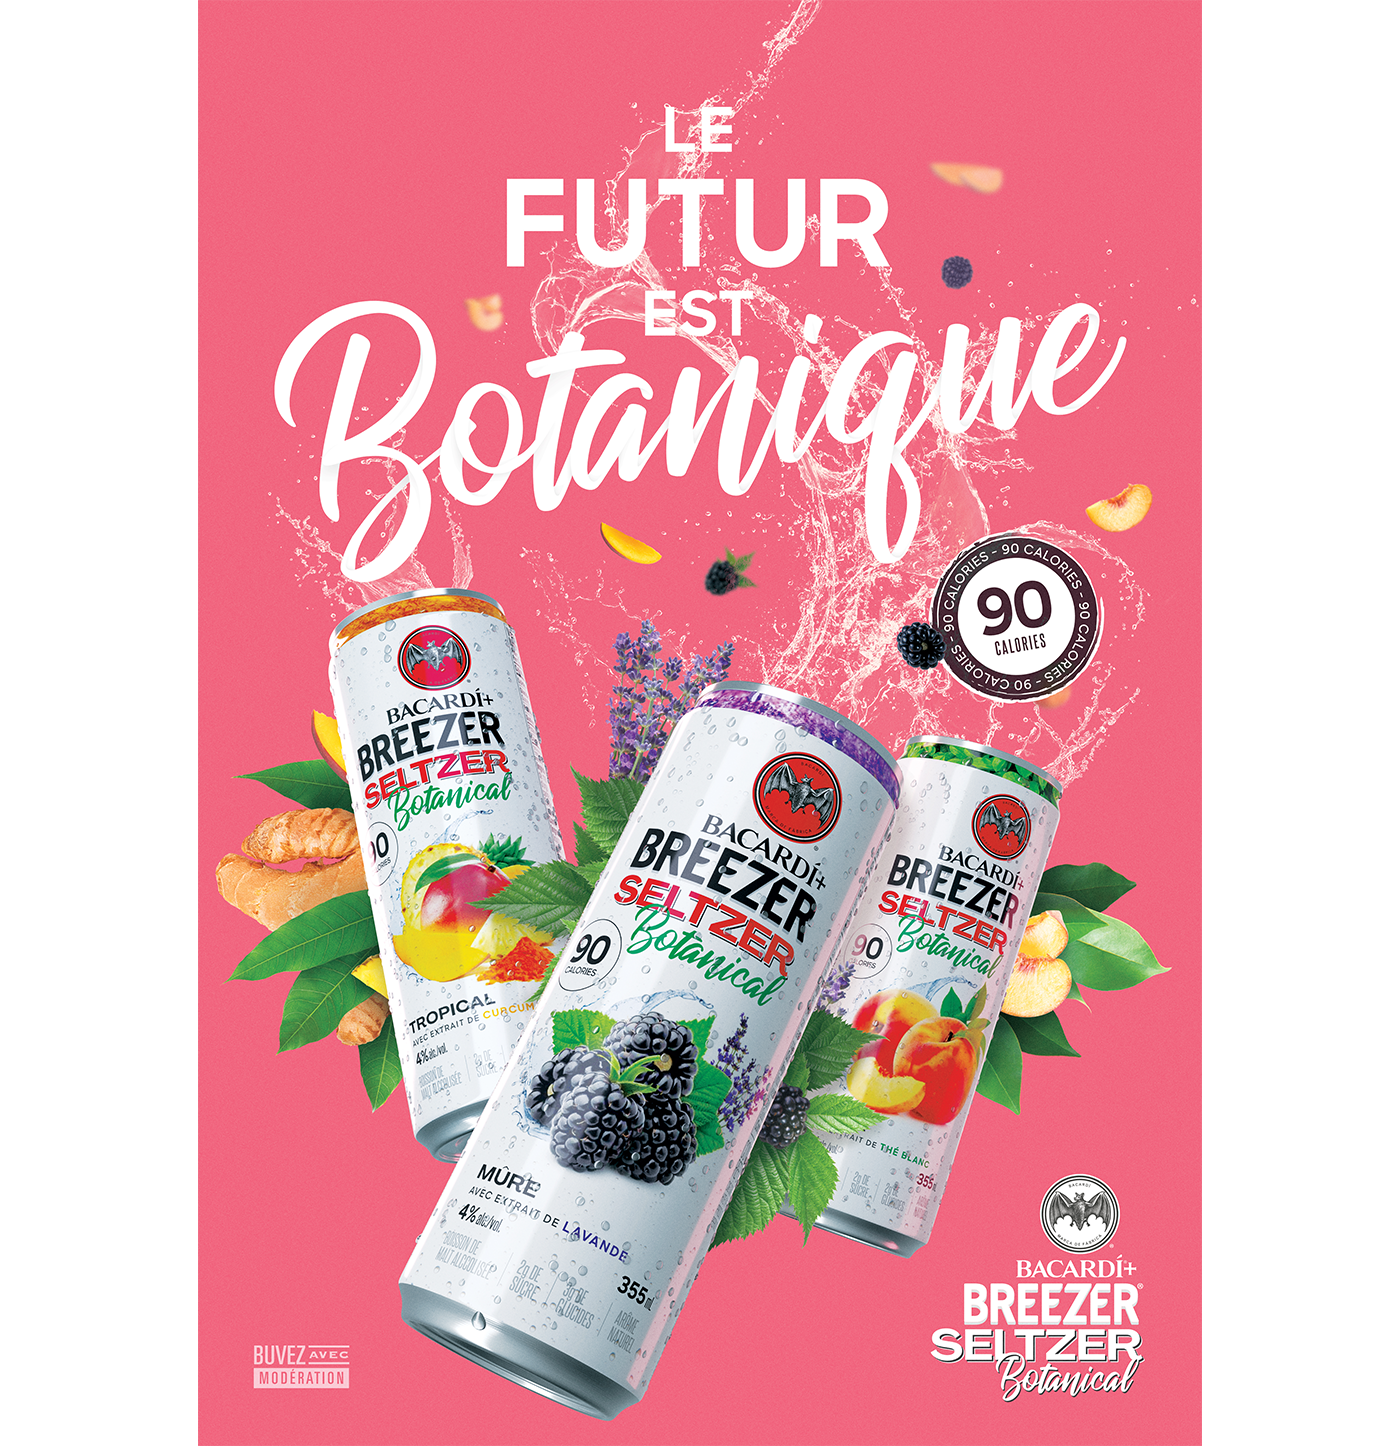 Bacardi Breezer Seltzer Botanical - Le futur est botanique - All flavours